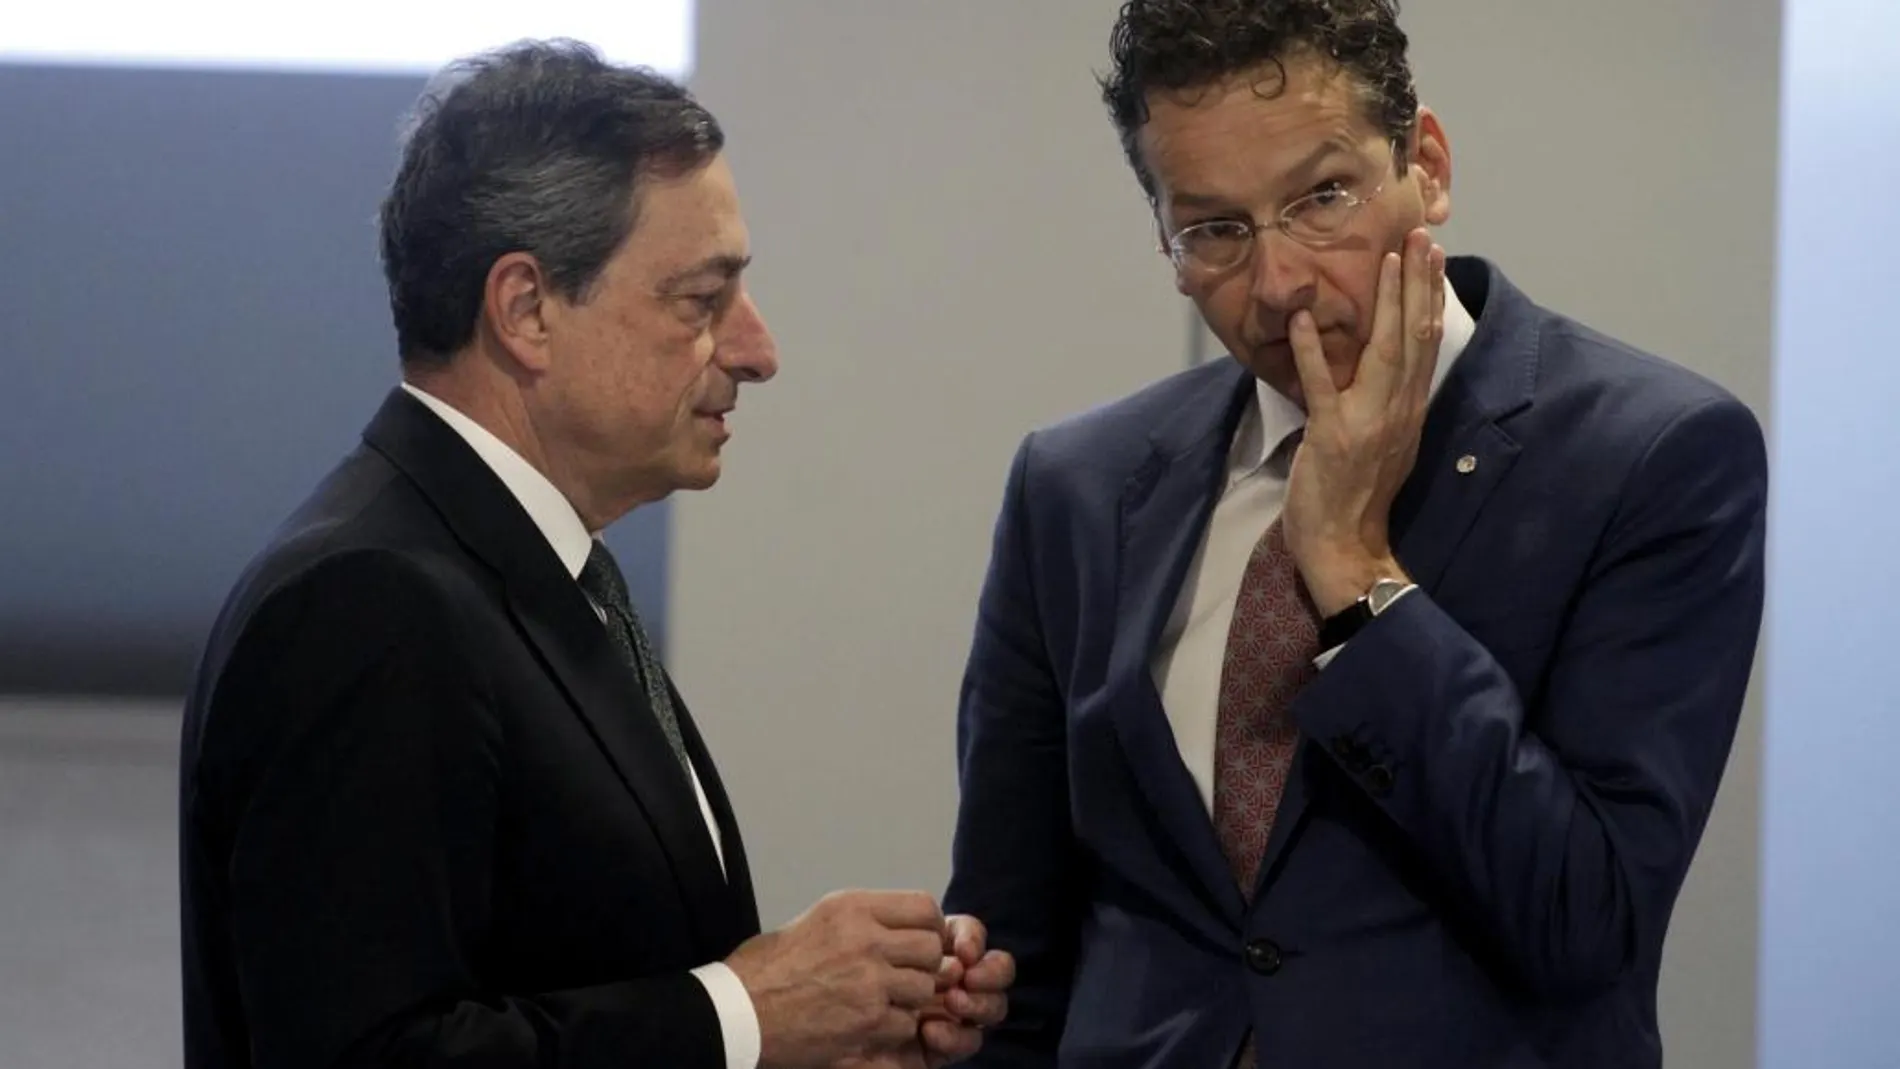 El presidente del BCE, Mario Draghi, habla con el presidente del Eurogrupo, Jeroen Dijsselbloem